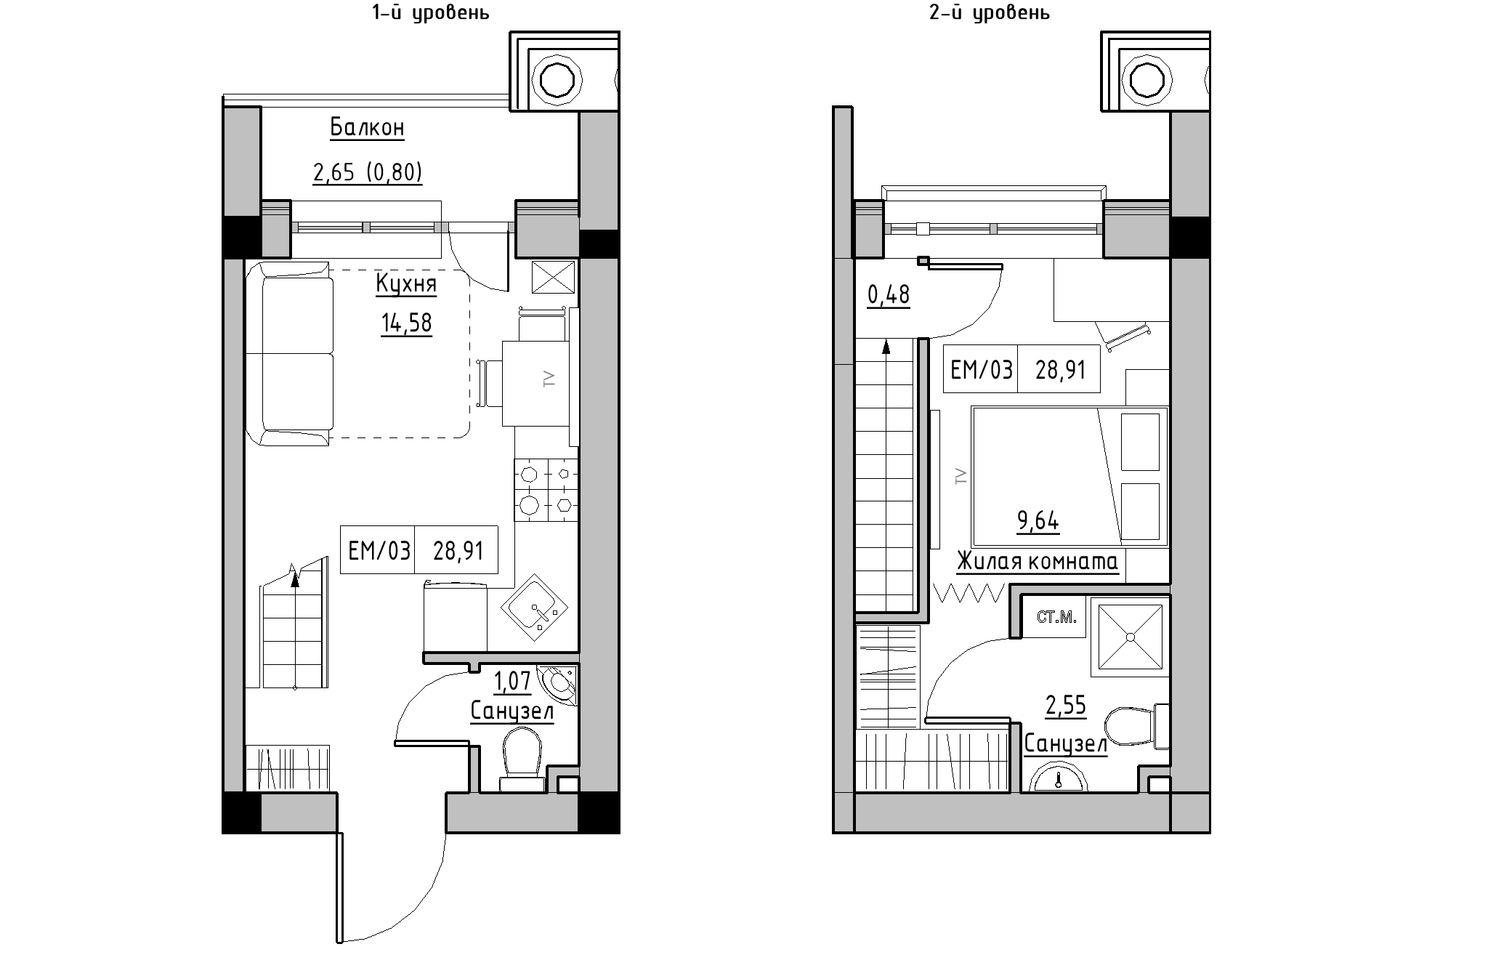 Planning 2-lvl flats area 28.91m2, KS-010-05/0006.